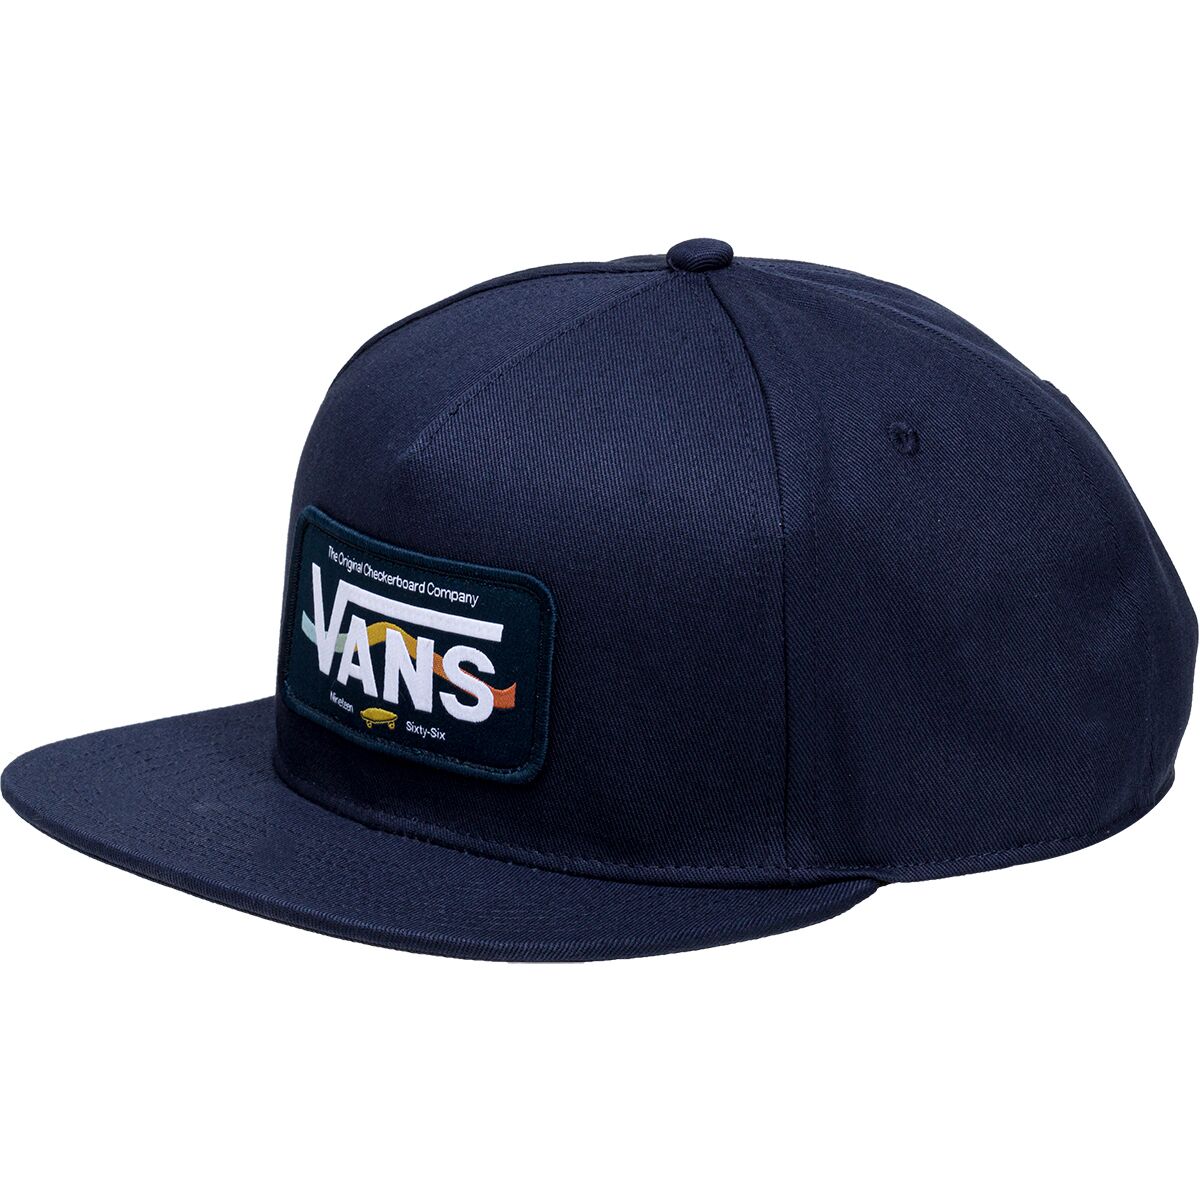 Vans Hi Grade Snapback Hat